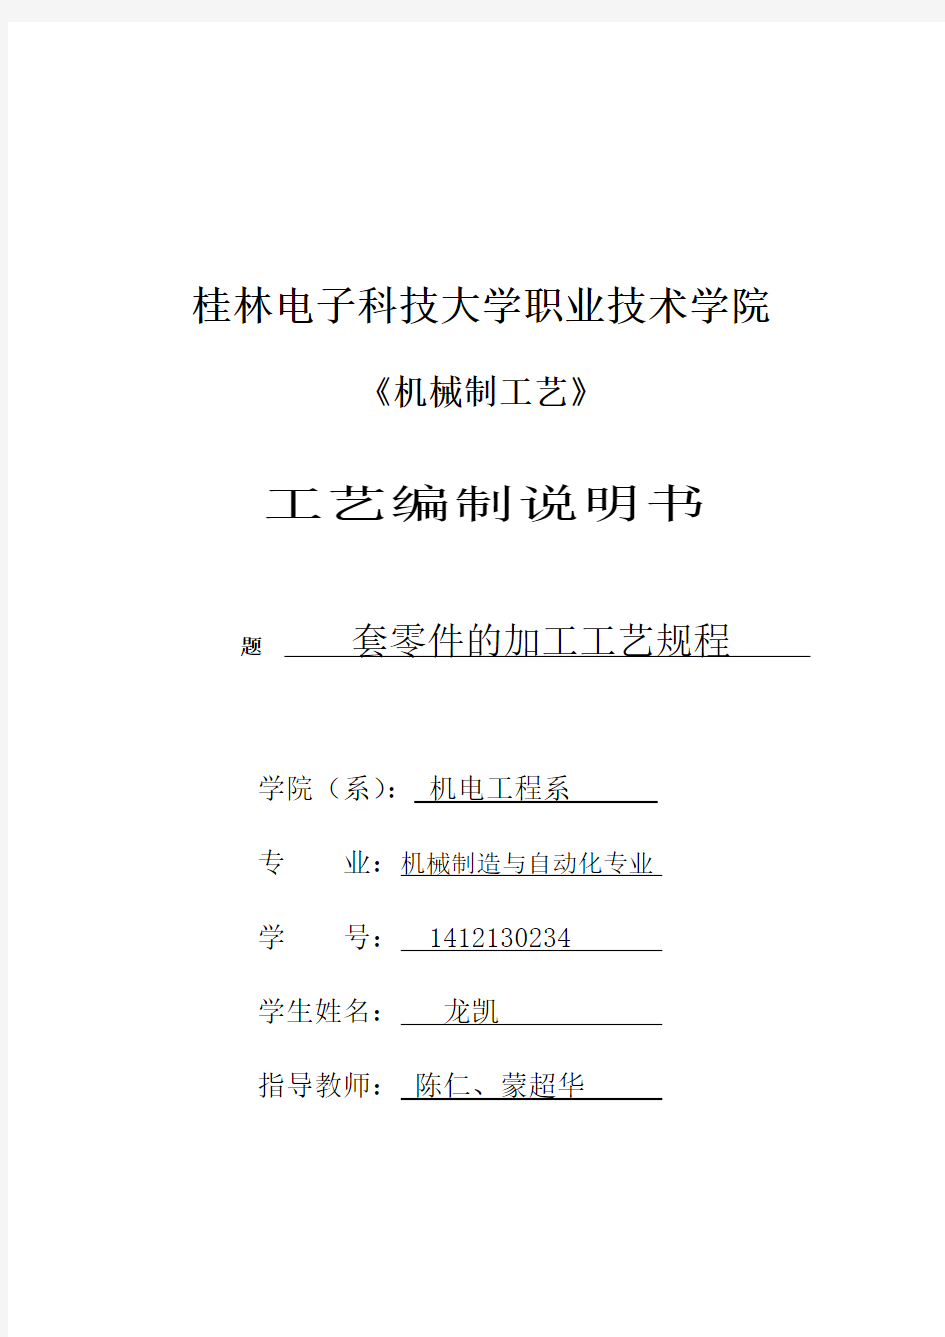 桂林电子科技大学职业技术学院工艺编制说明书2